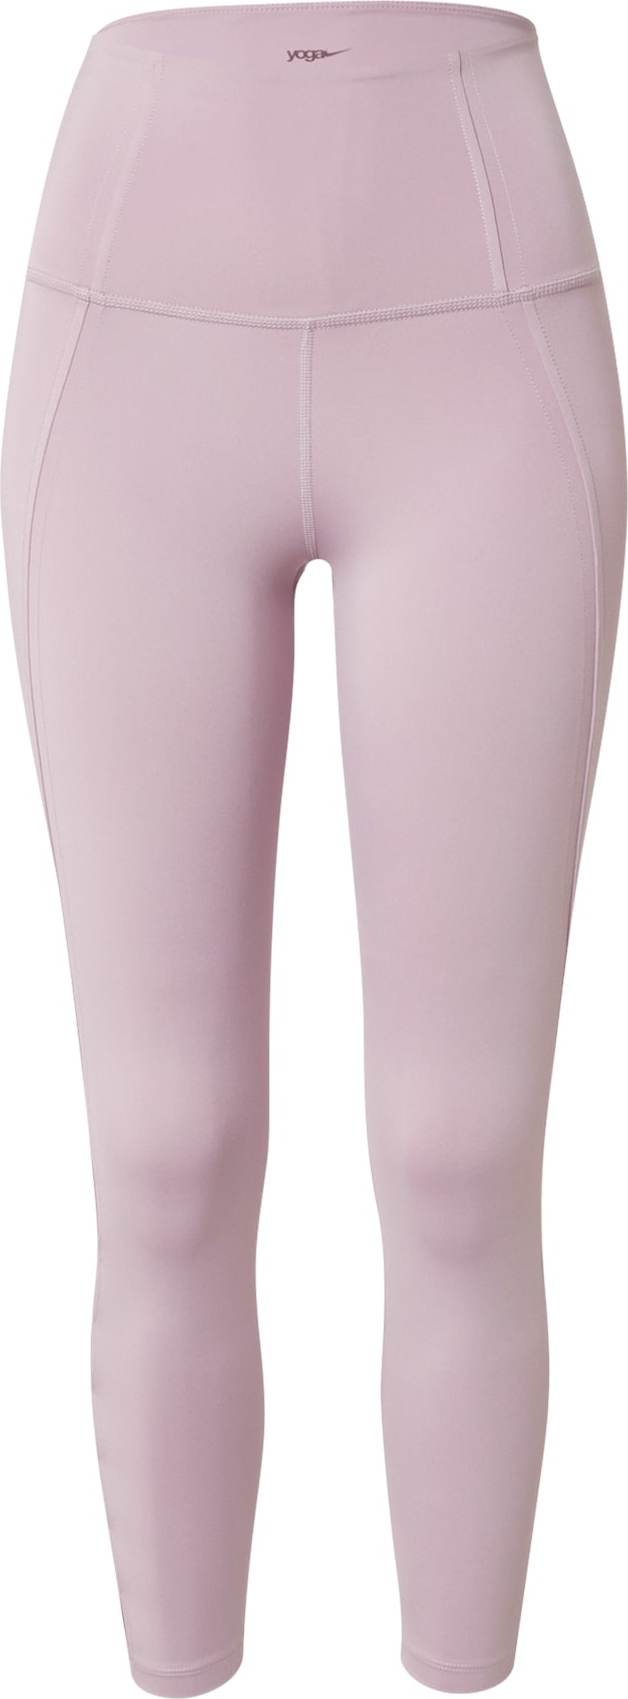 NIKE Sportovní kalhoty pastelová fialová / bílá